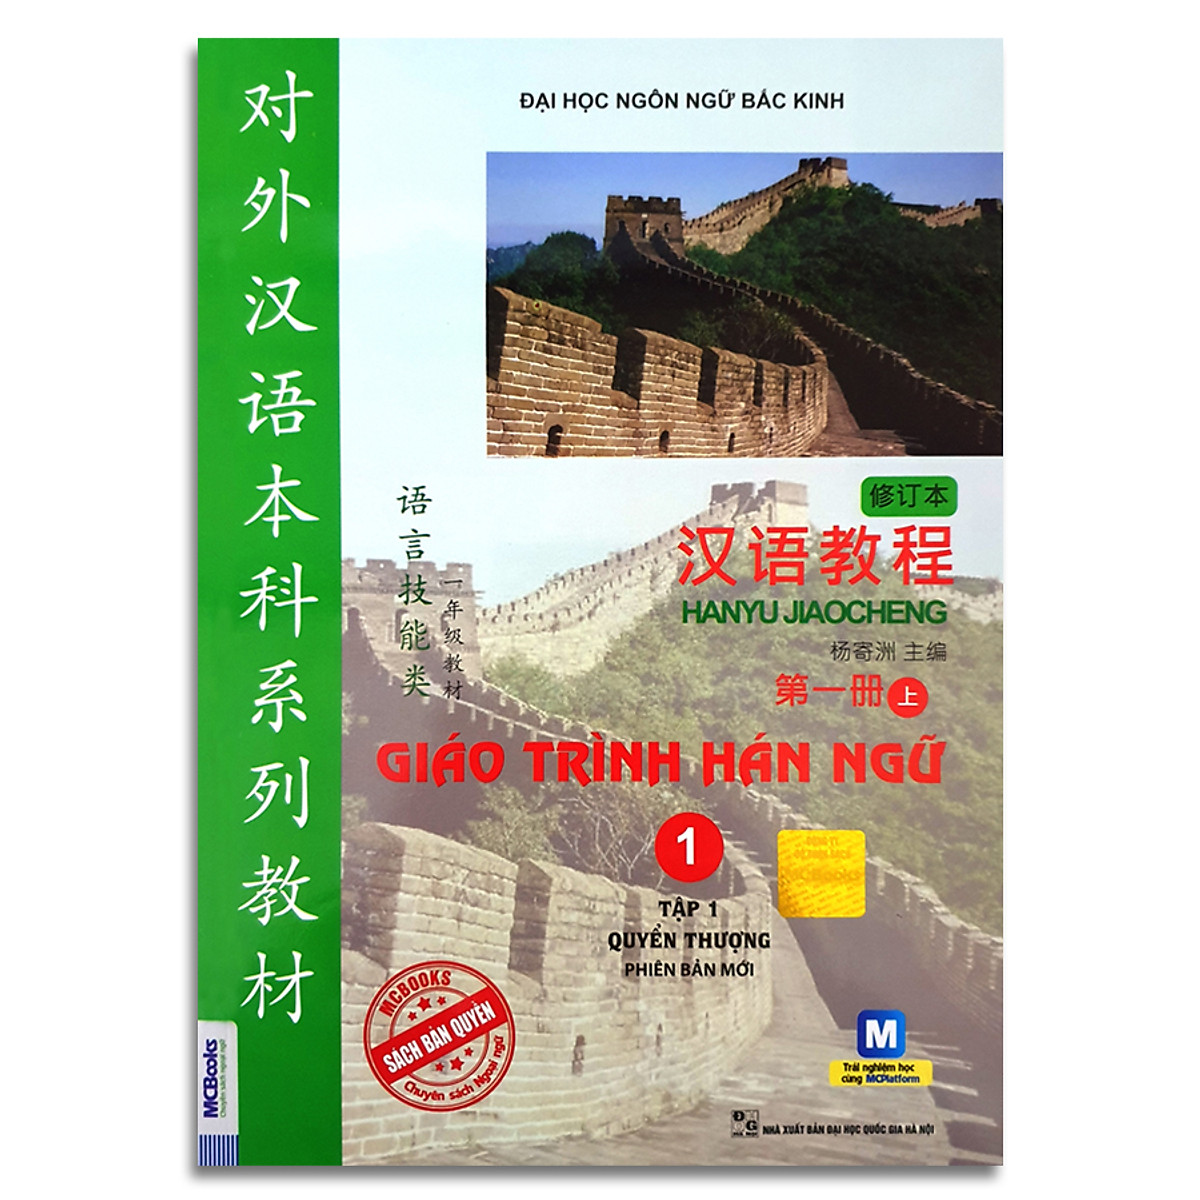 Combo 2 cuốn Giáo Trình Hán Ngữ 1 - Tập 1 quyển thượng phiên bản mới + Giáo Trình Hán Ngữ 2 - Tập 1 quyển hạ phiên bản mới